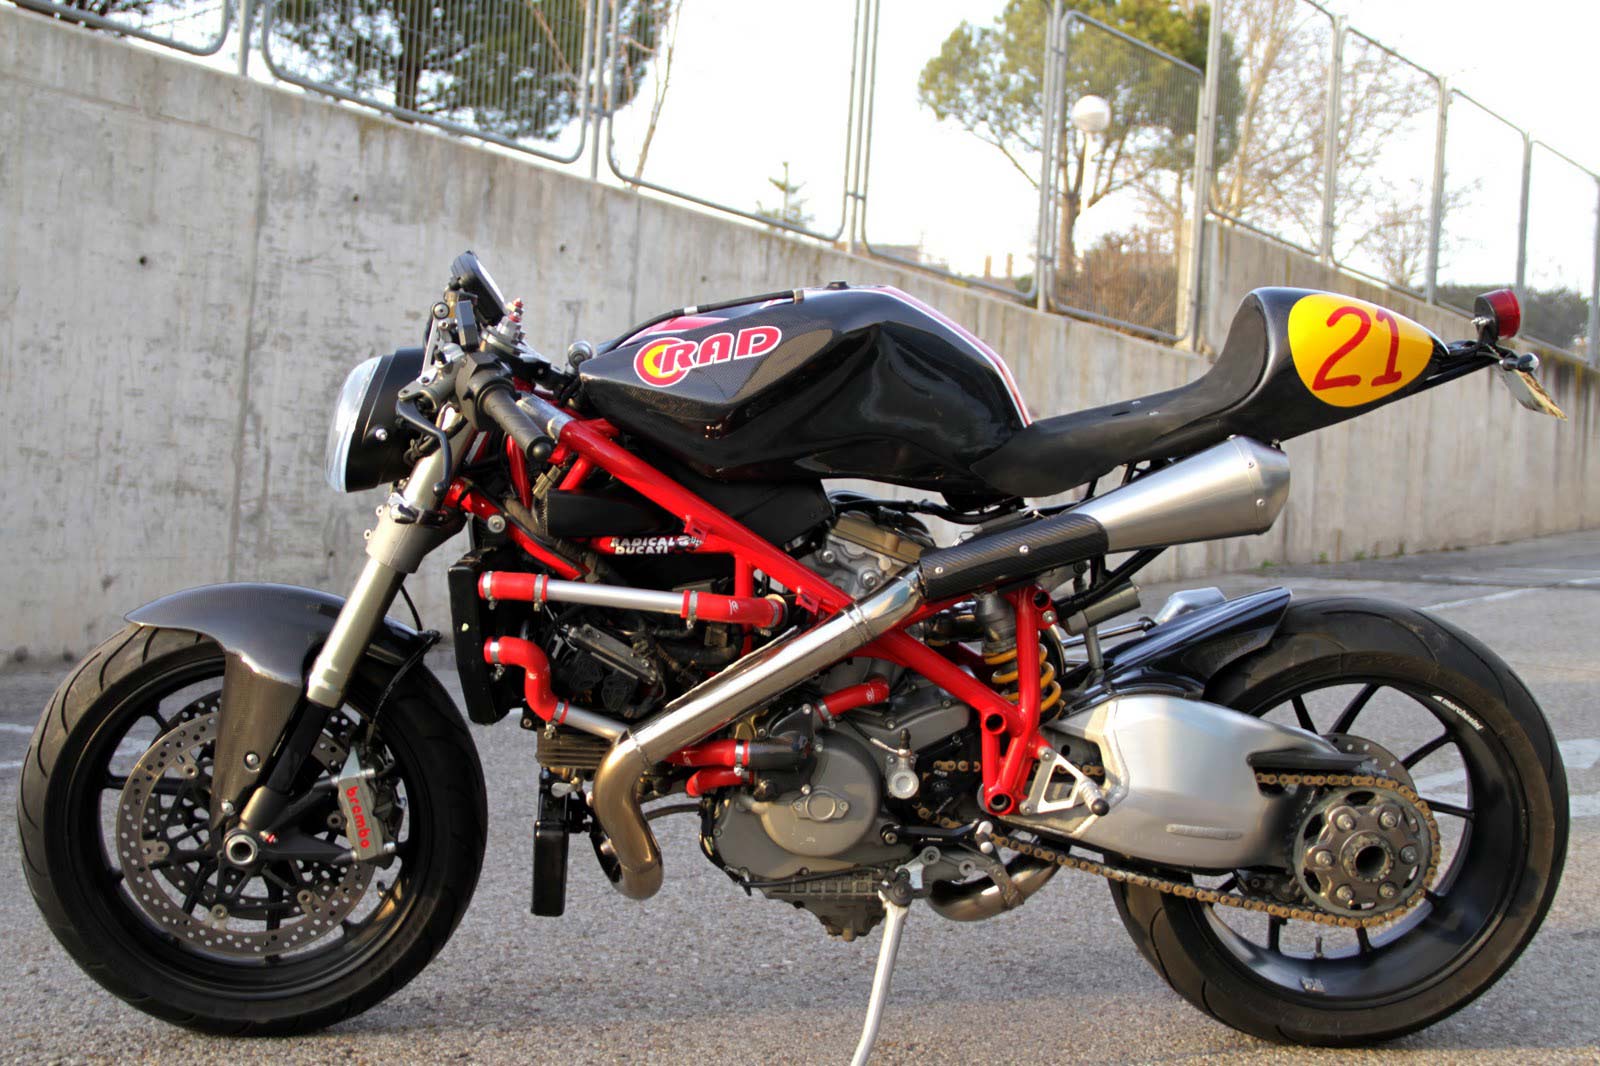 Radical Ducati Mikaracer Asphalt Rubber